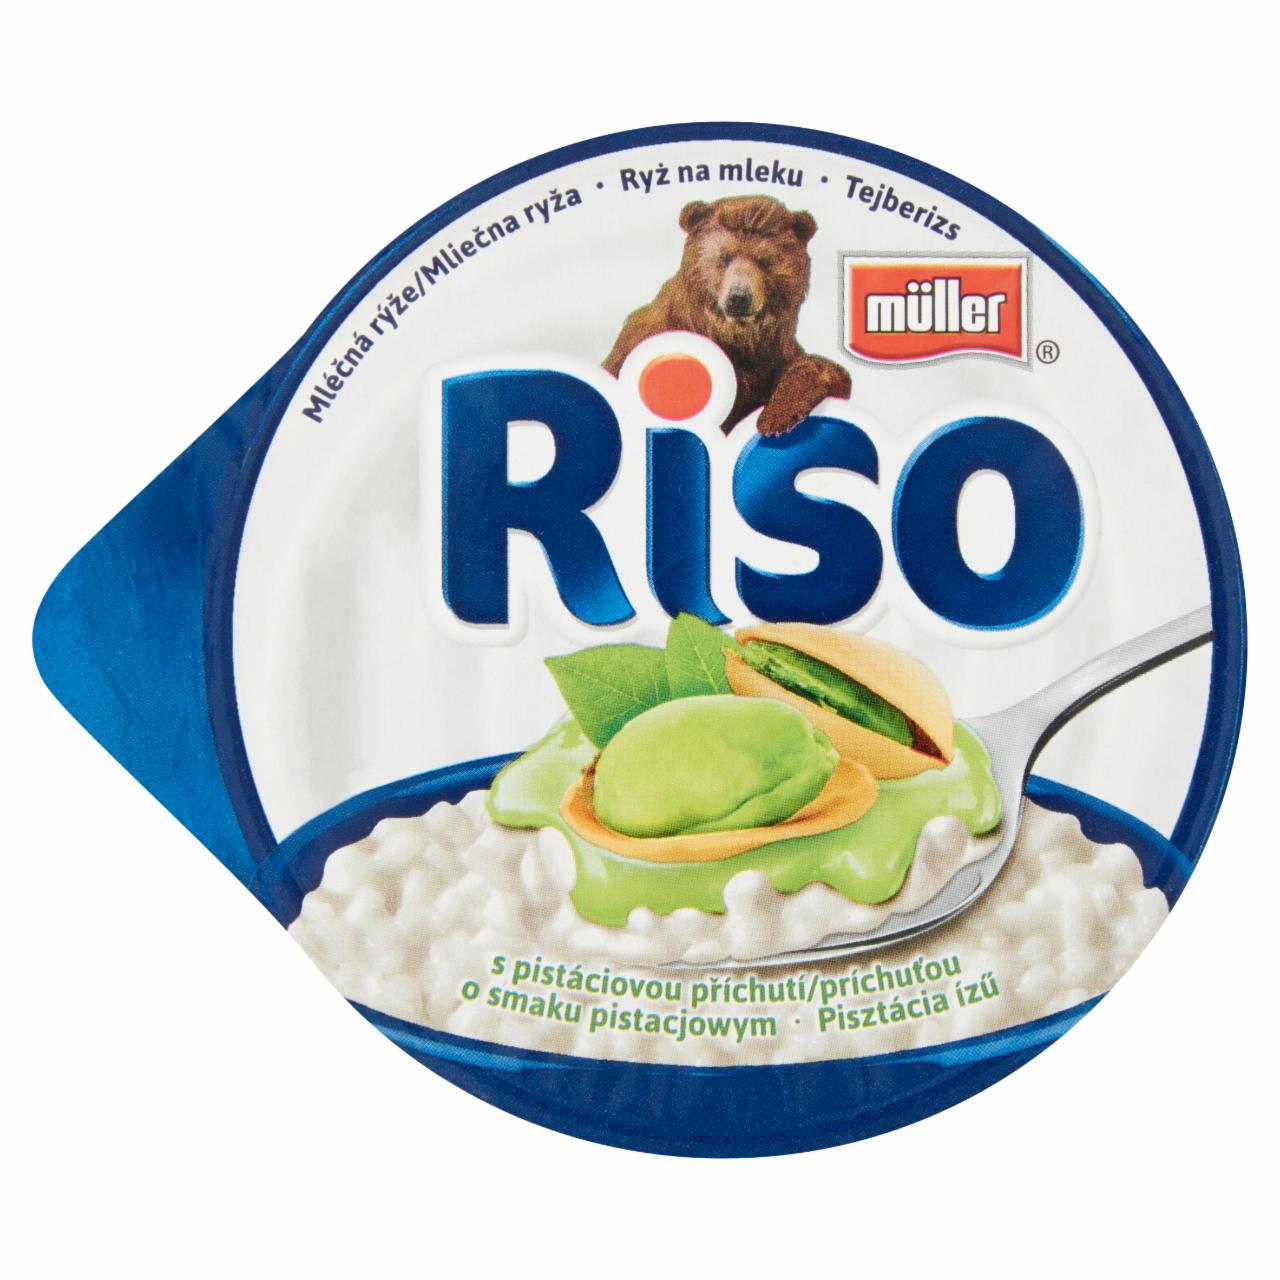 Képek - Müller Riso tejberizs desszert pisztácia ízű készítménnyel 200 g